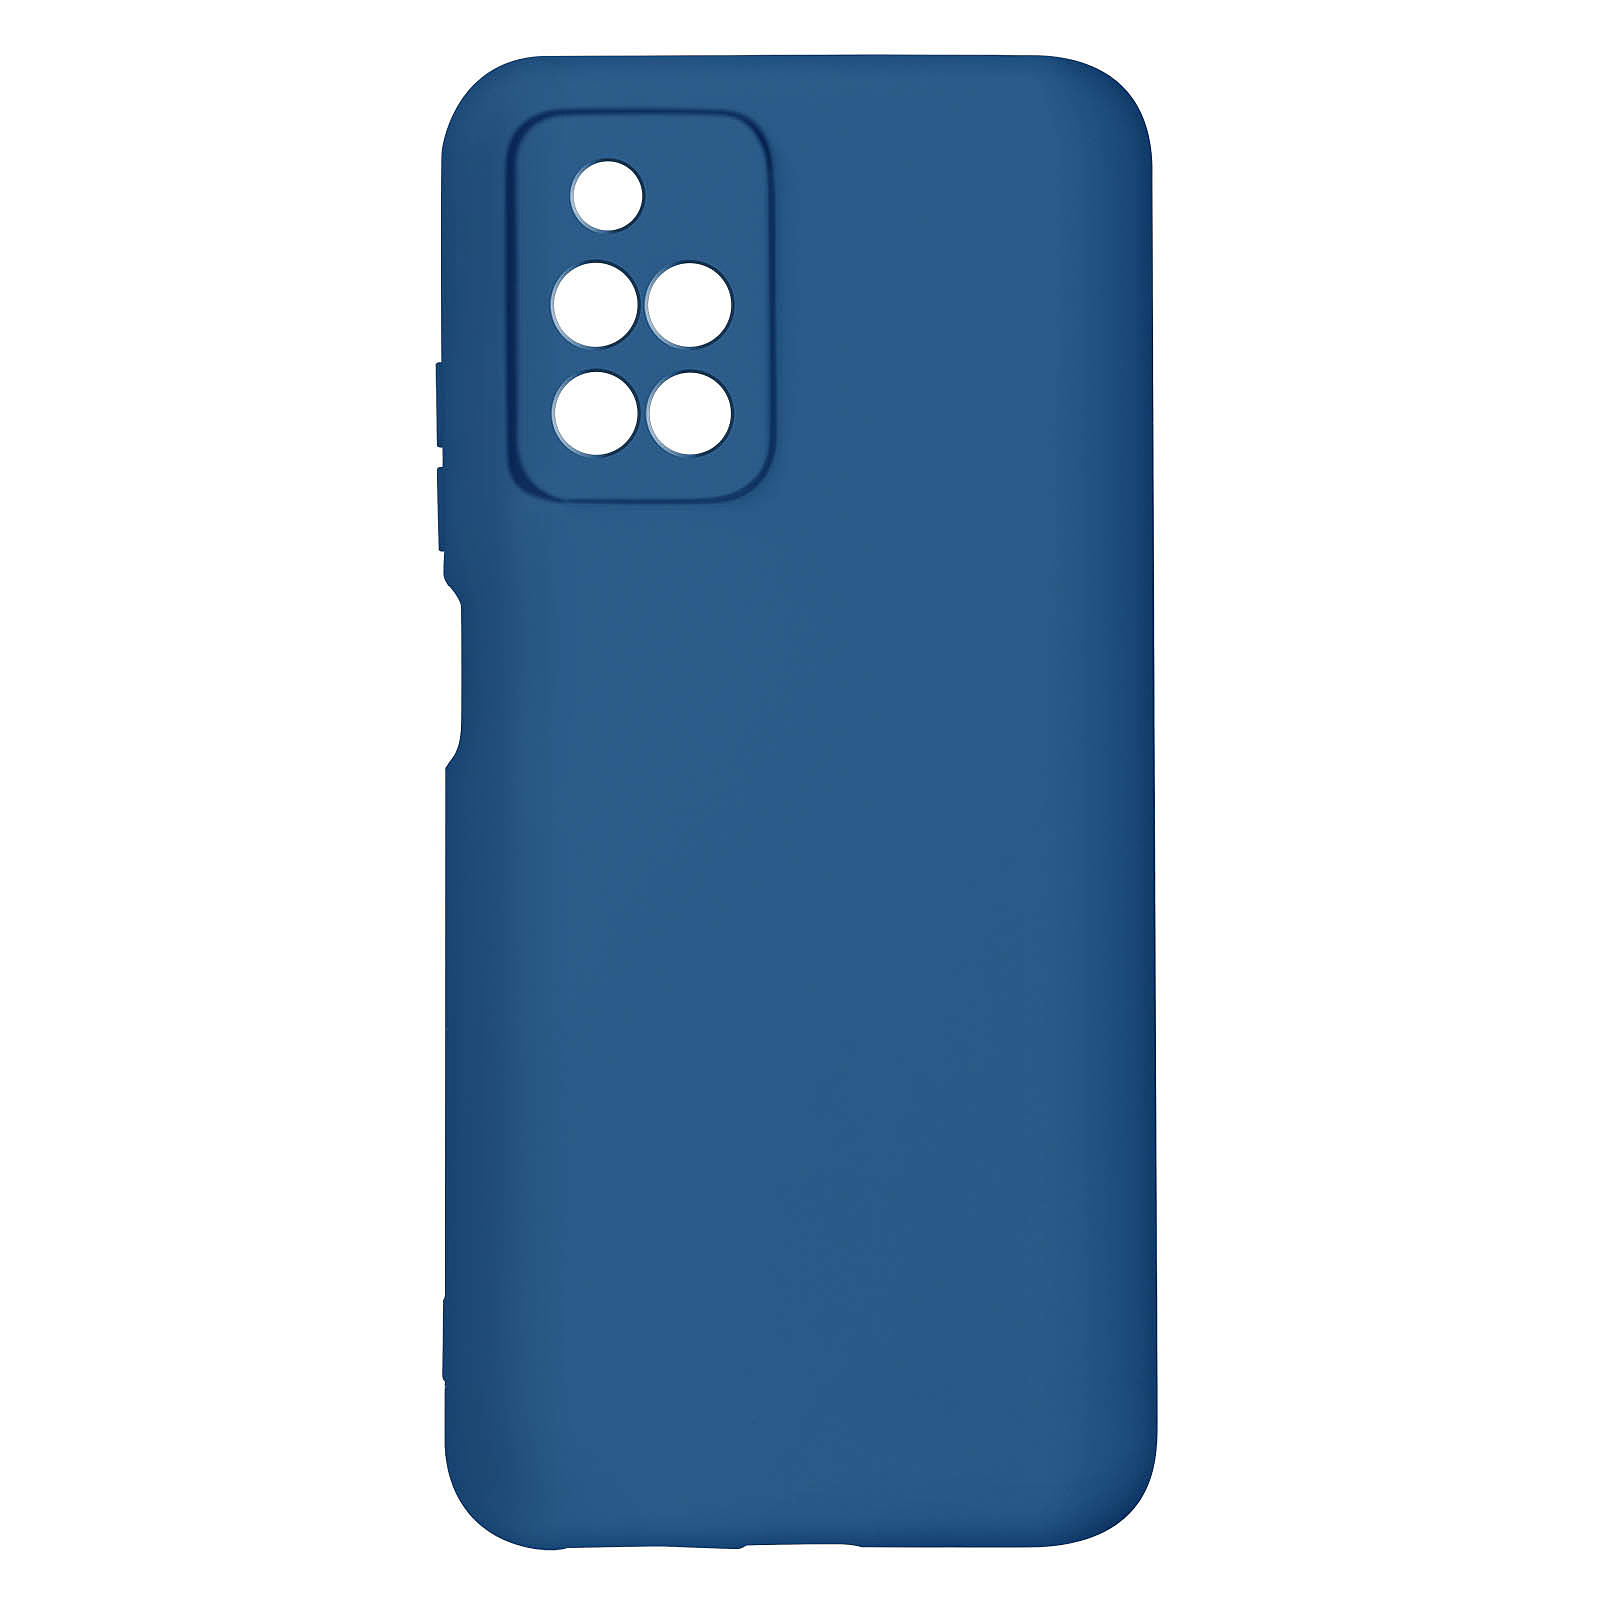 Avizar Coque pour Xiaomi Redmi 10 Silicone Semi-rigide Finition Soft-touch Fine Bleu - Coque telephone Avizar